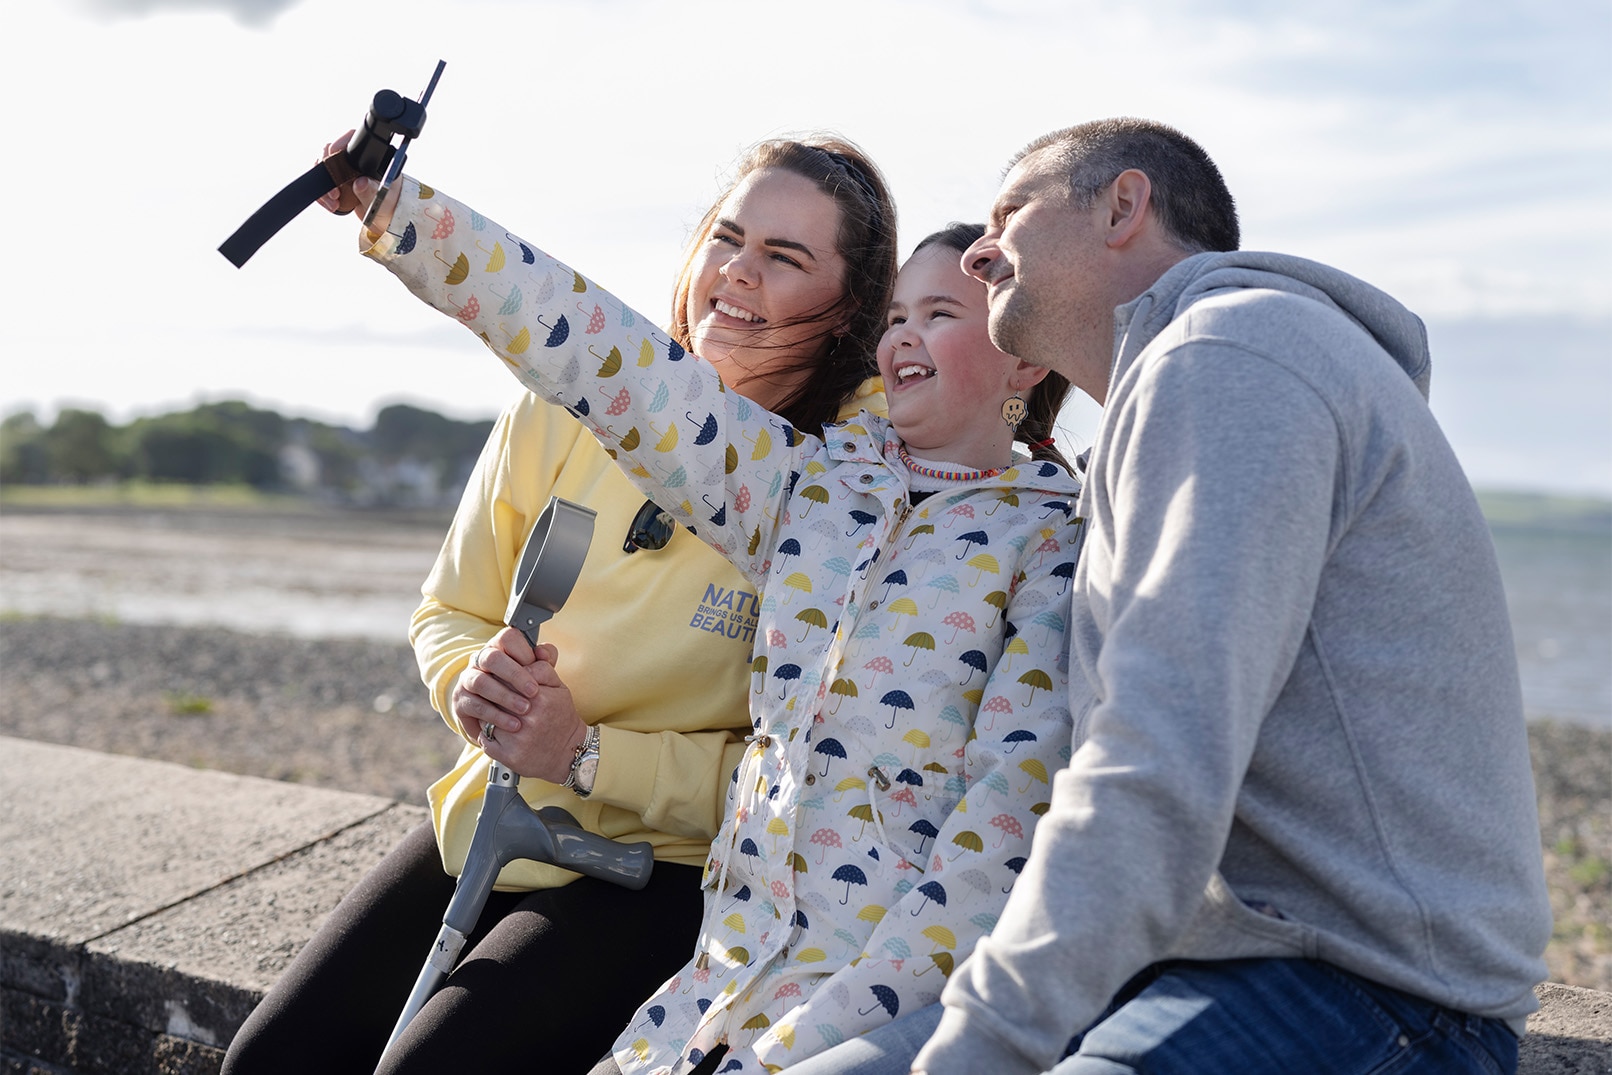 Sarah sammen med mannen og datteren, der datteren tar en selfie av familien